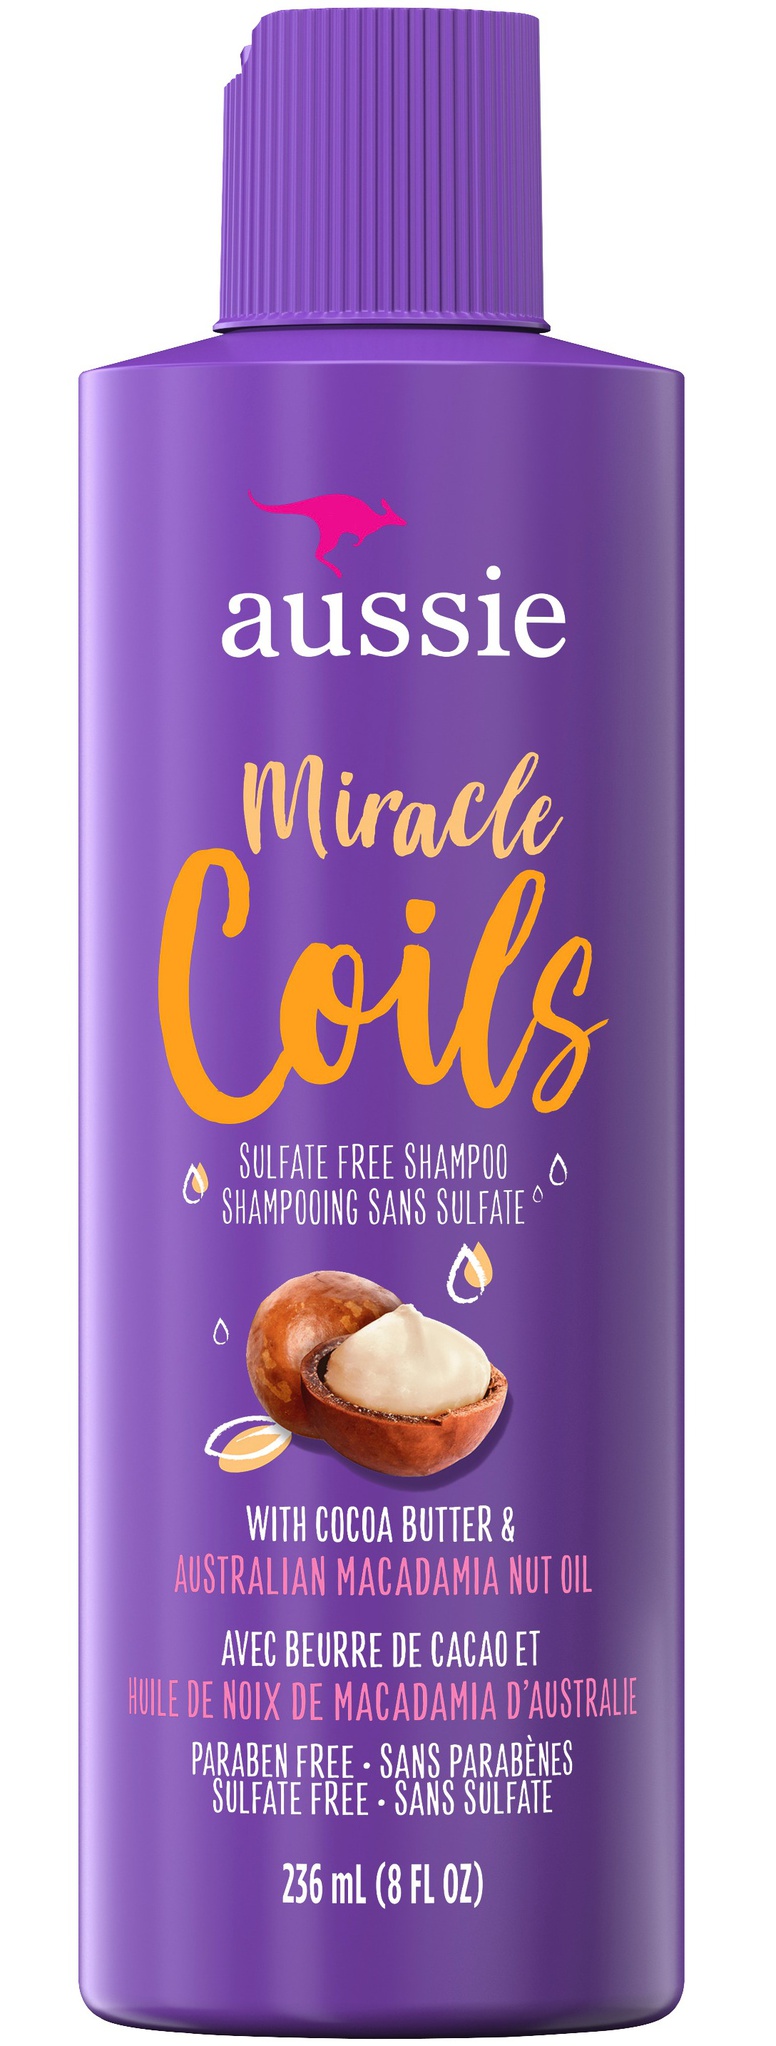 Aussie Miracle Coils Shampoo